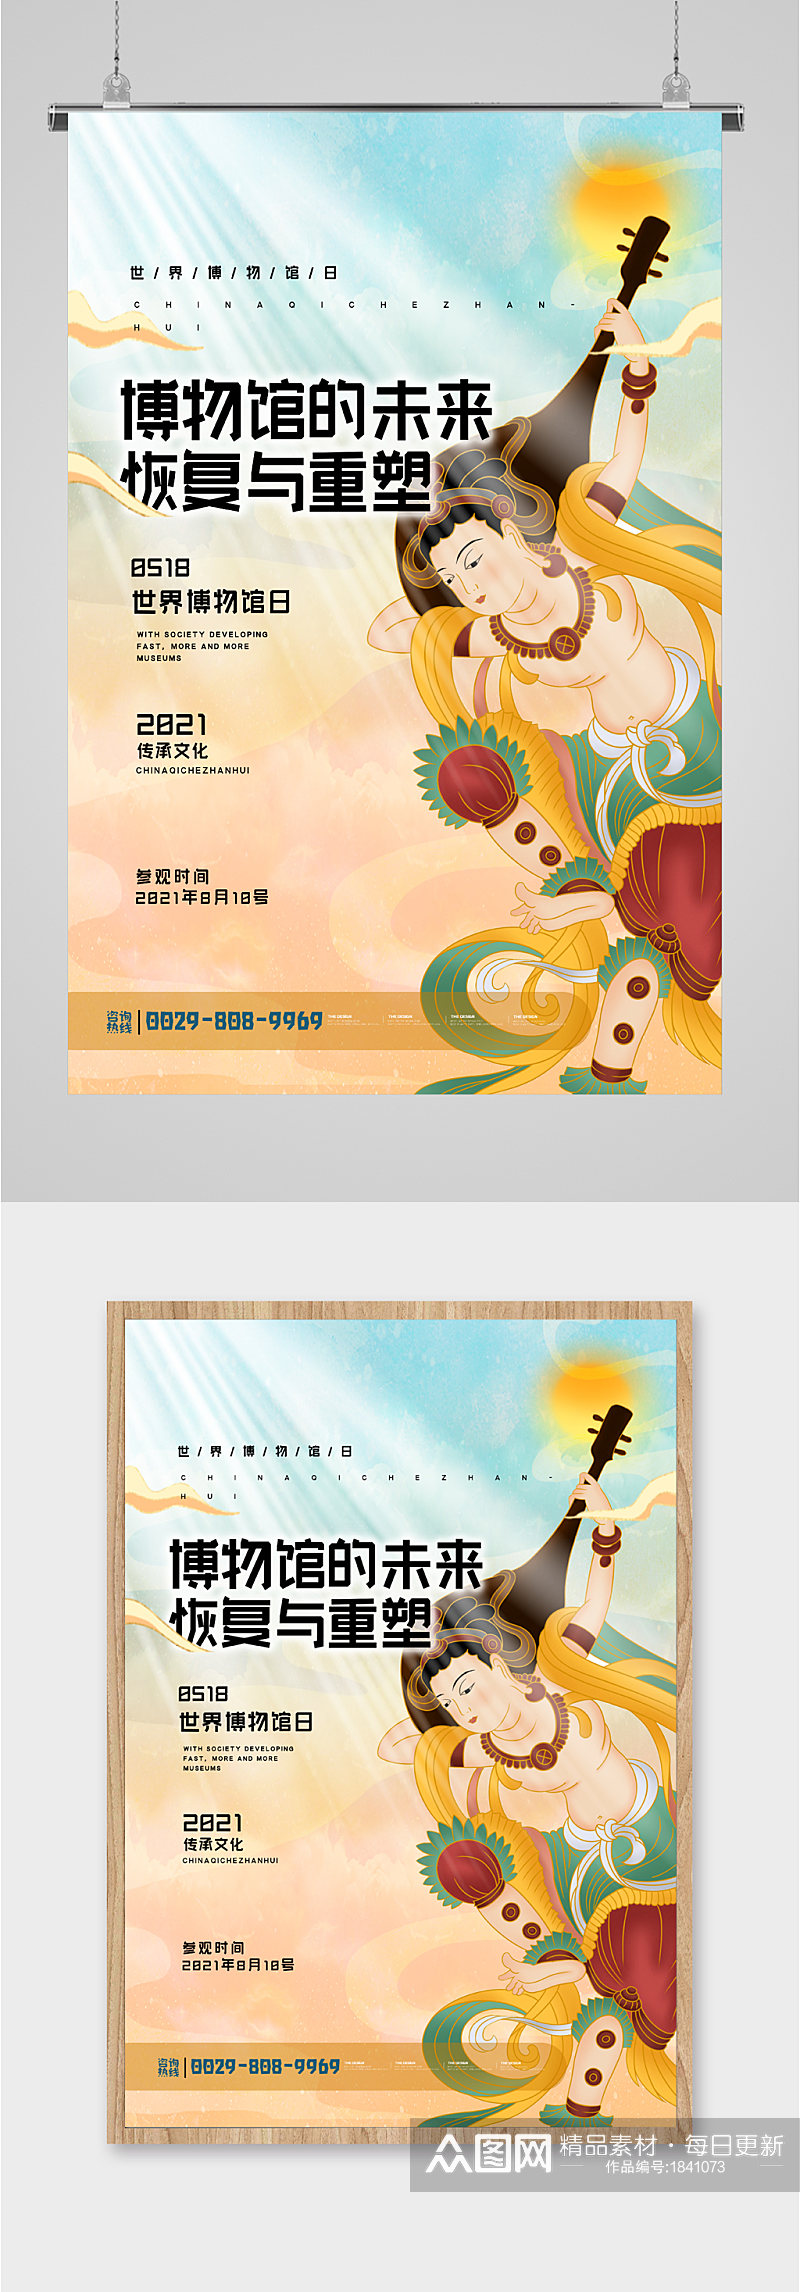 暖色大气中国文化海报素材